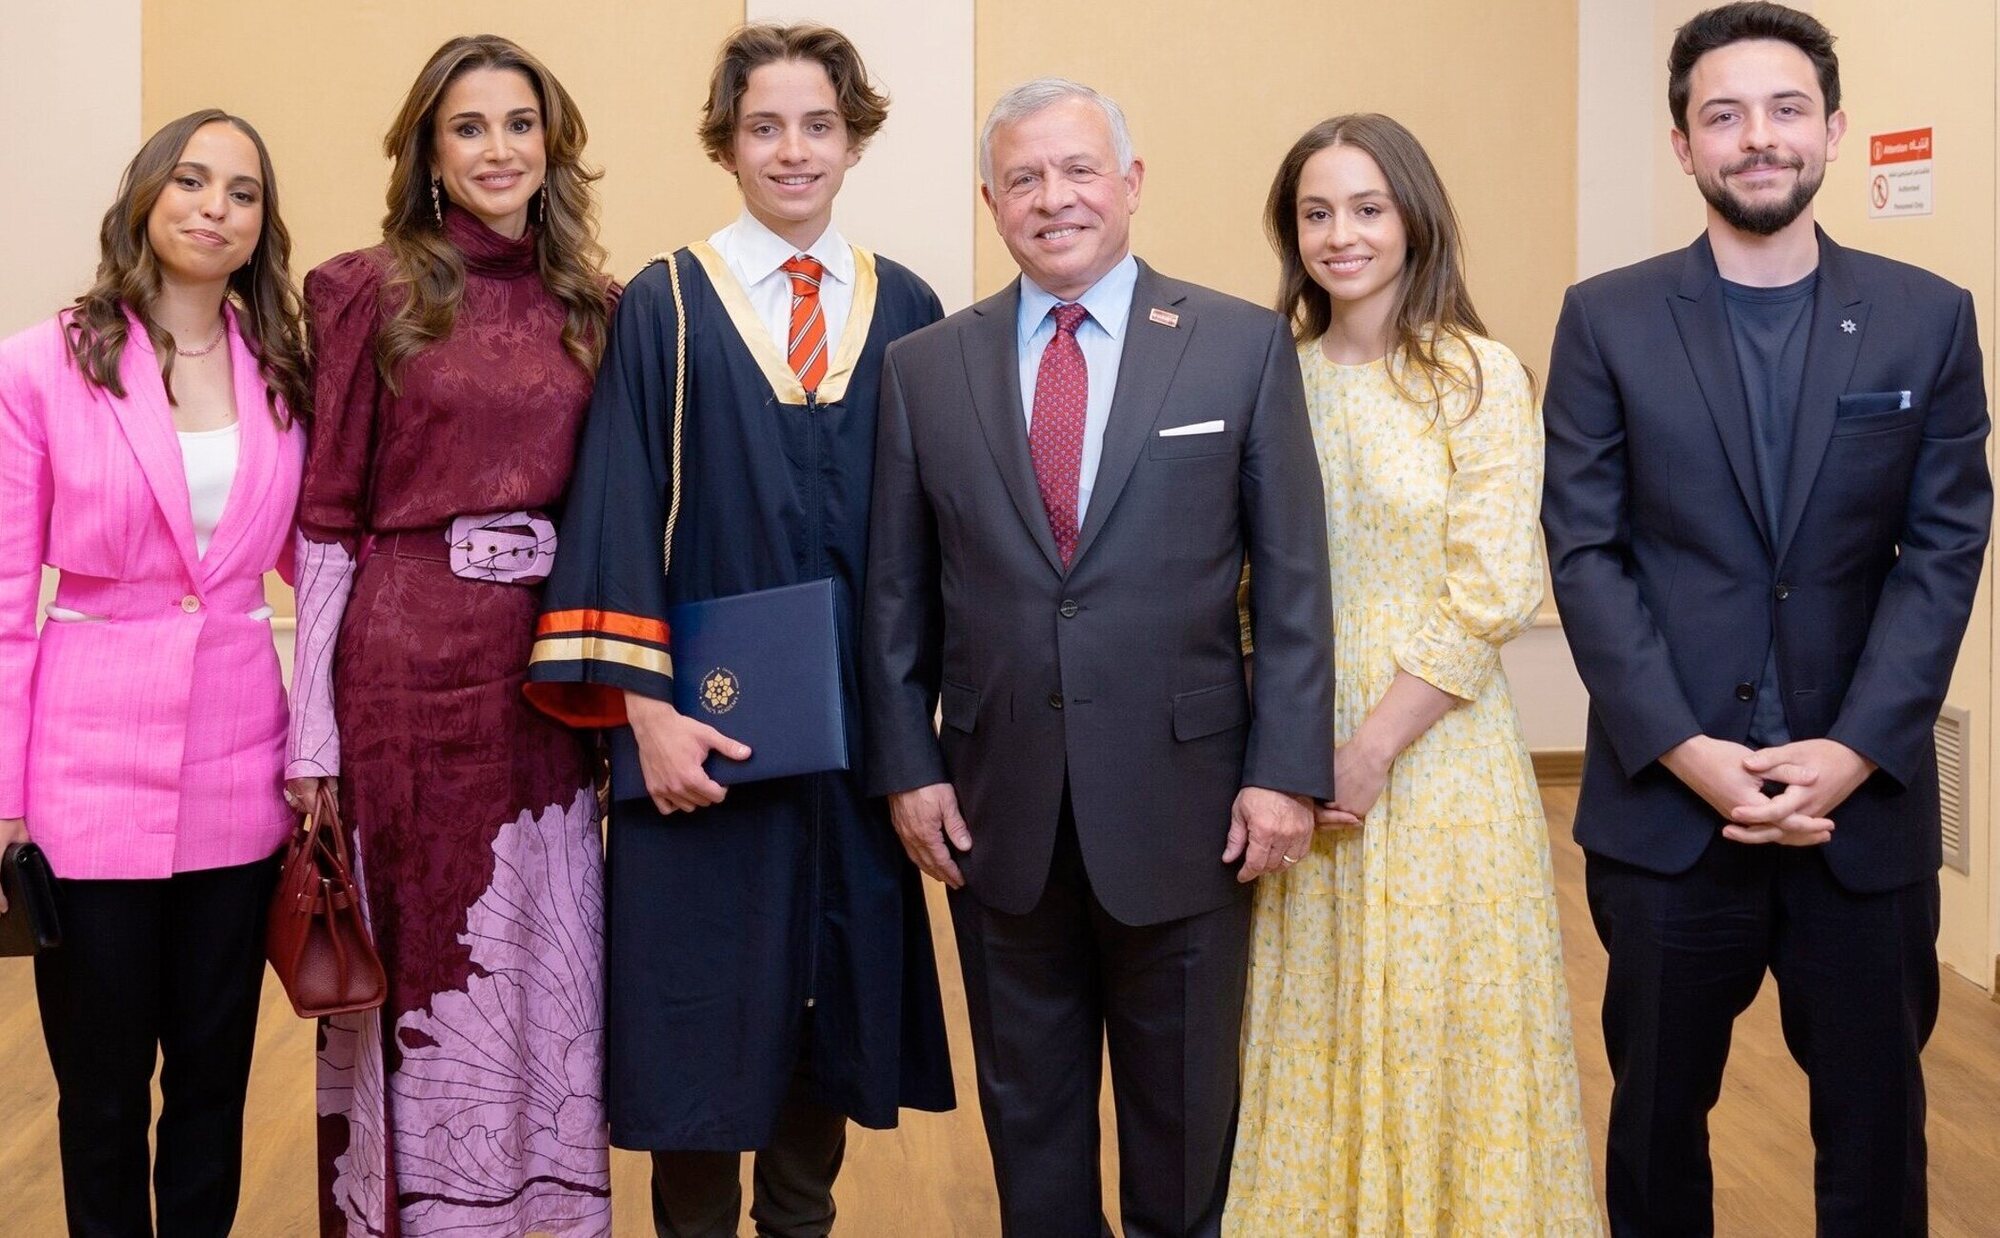 Reunión familiar, alegría, una ausencia y la broma de Rania de Jordania en la graduación de Hashem de Jordania